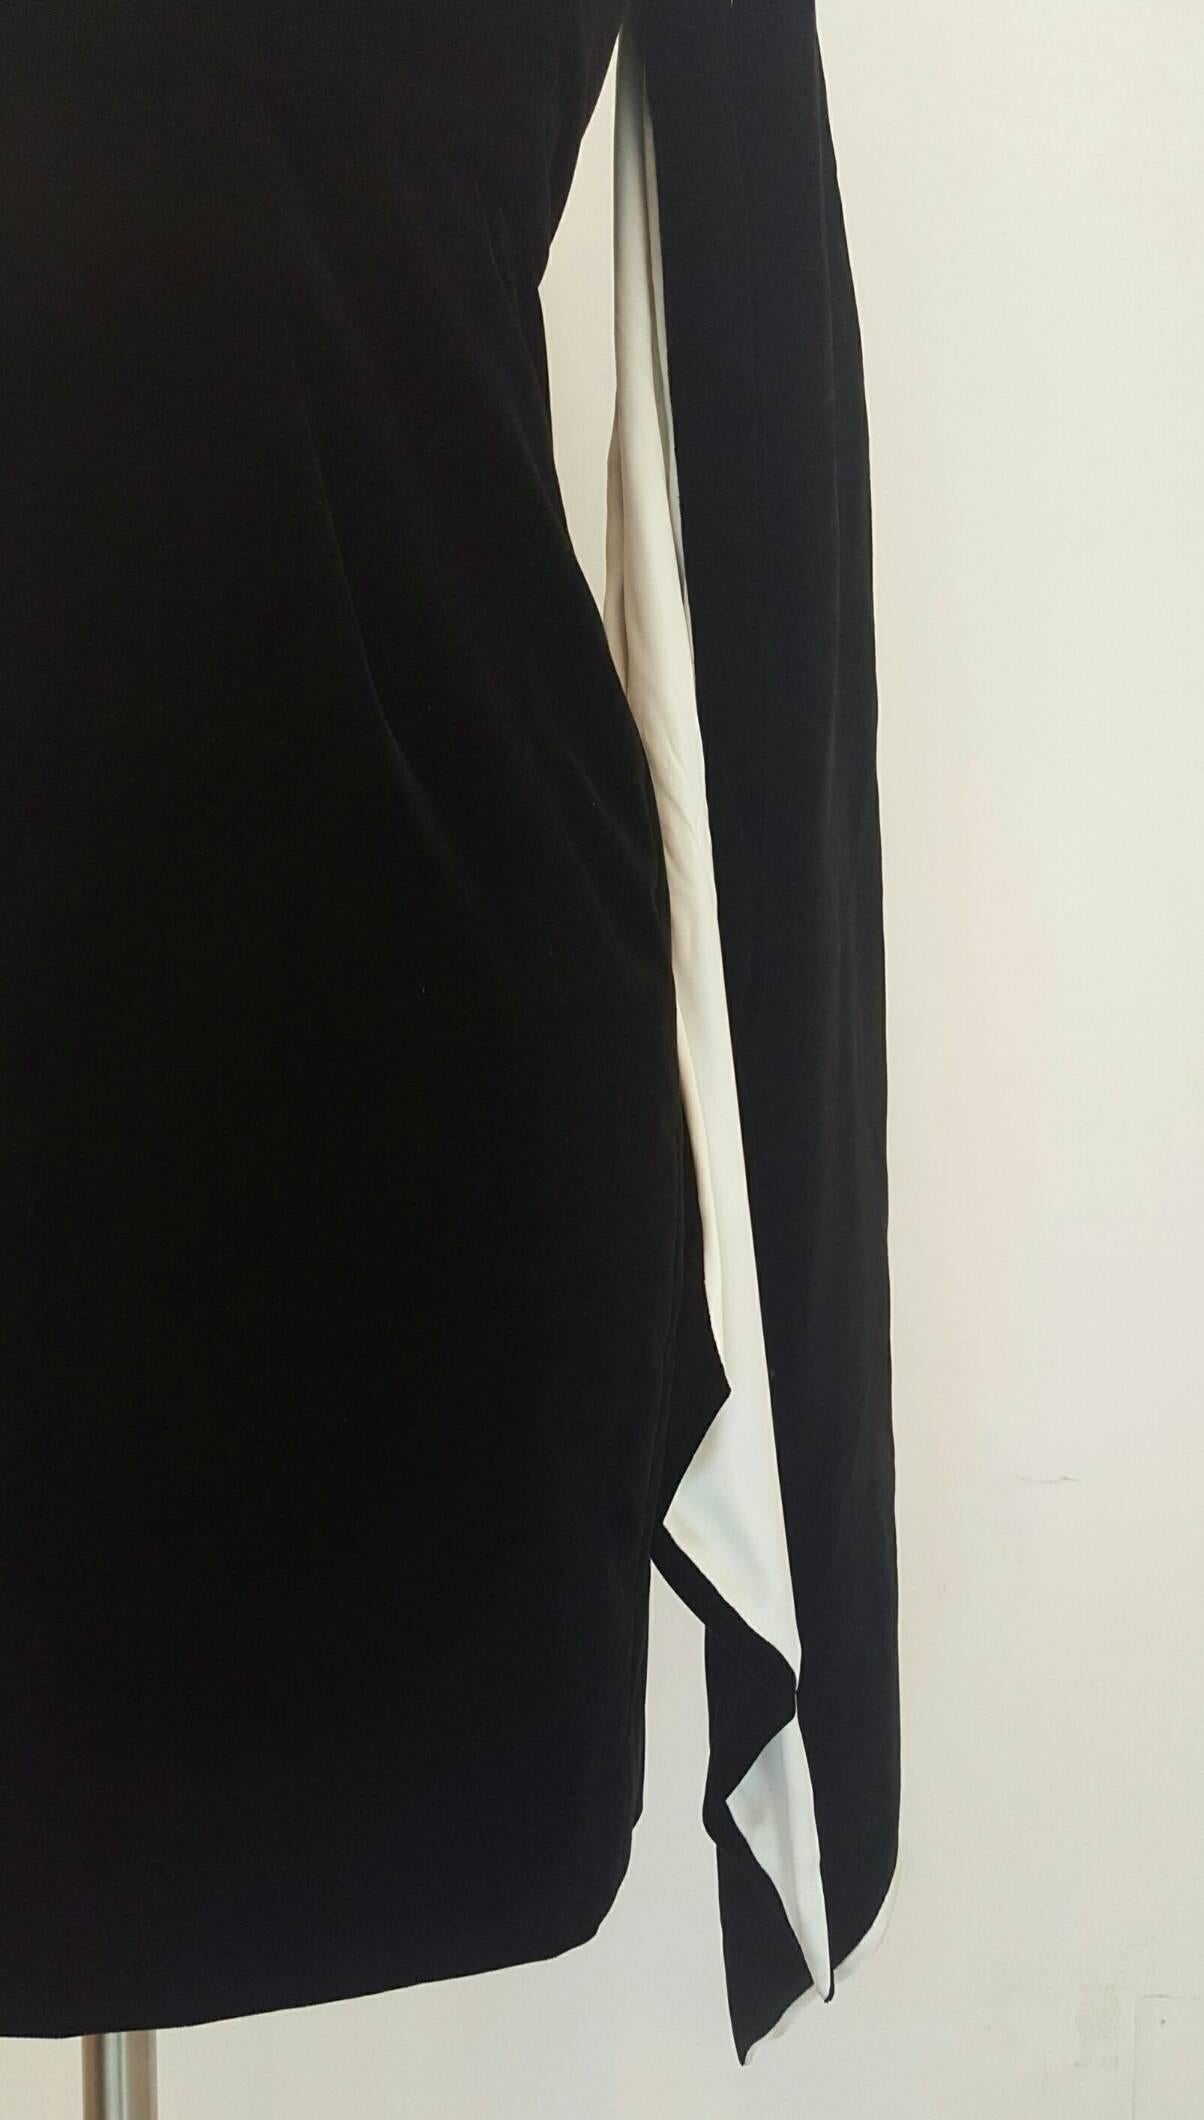 Black 2000s Yves Saint Laurent black and white velvet dress NWOT